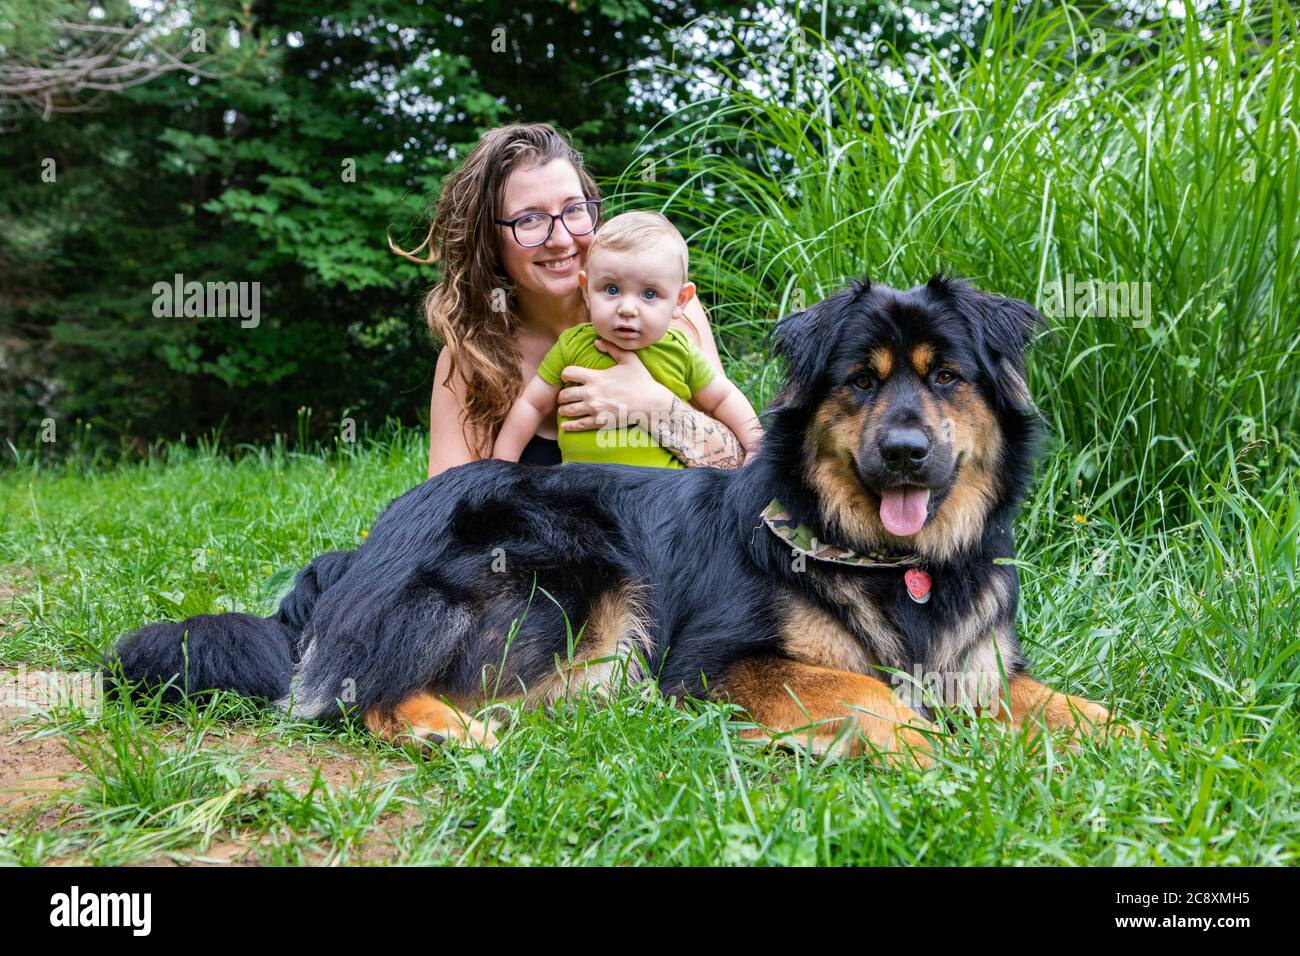 Mama, Baby-Sohn und große schwarze pelzigen Hund posiert für die Kamera im Outdoor-Porträt. Mama lächelt und hält ihr Baby, während sie alle in die Kamera schauen. Stockfoto